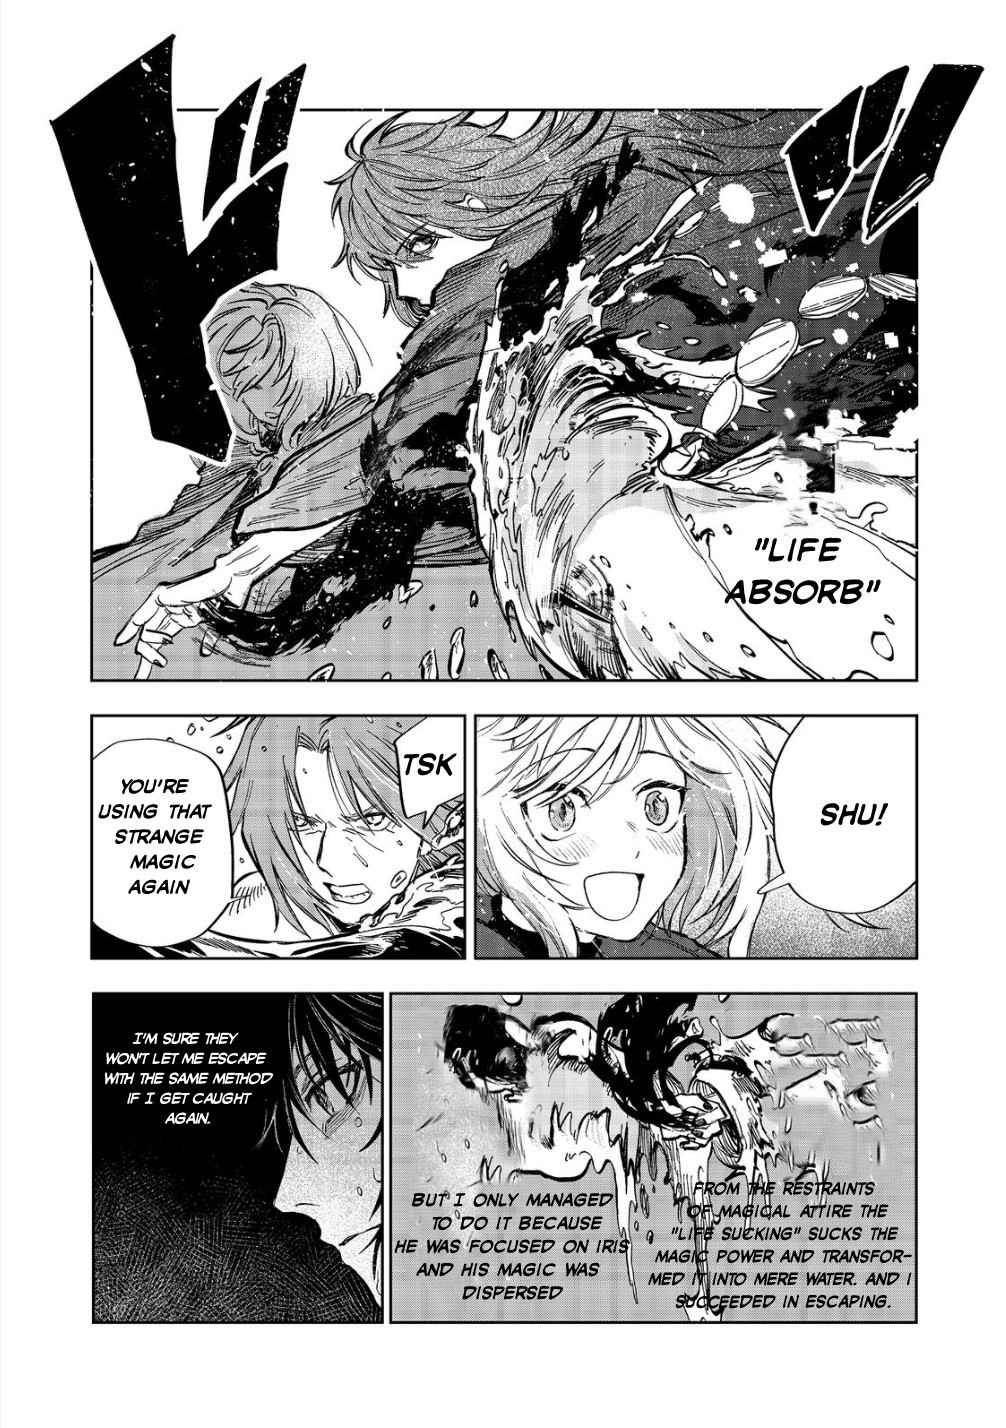 Meiou-sama ga Tooru no desu yo! Chapter 11-eng-li - Page 13